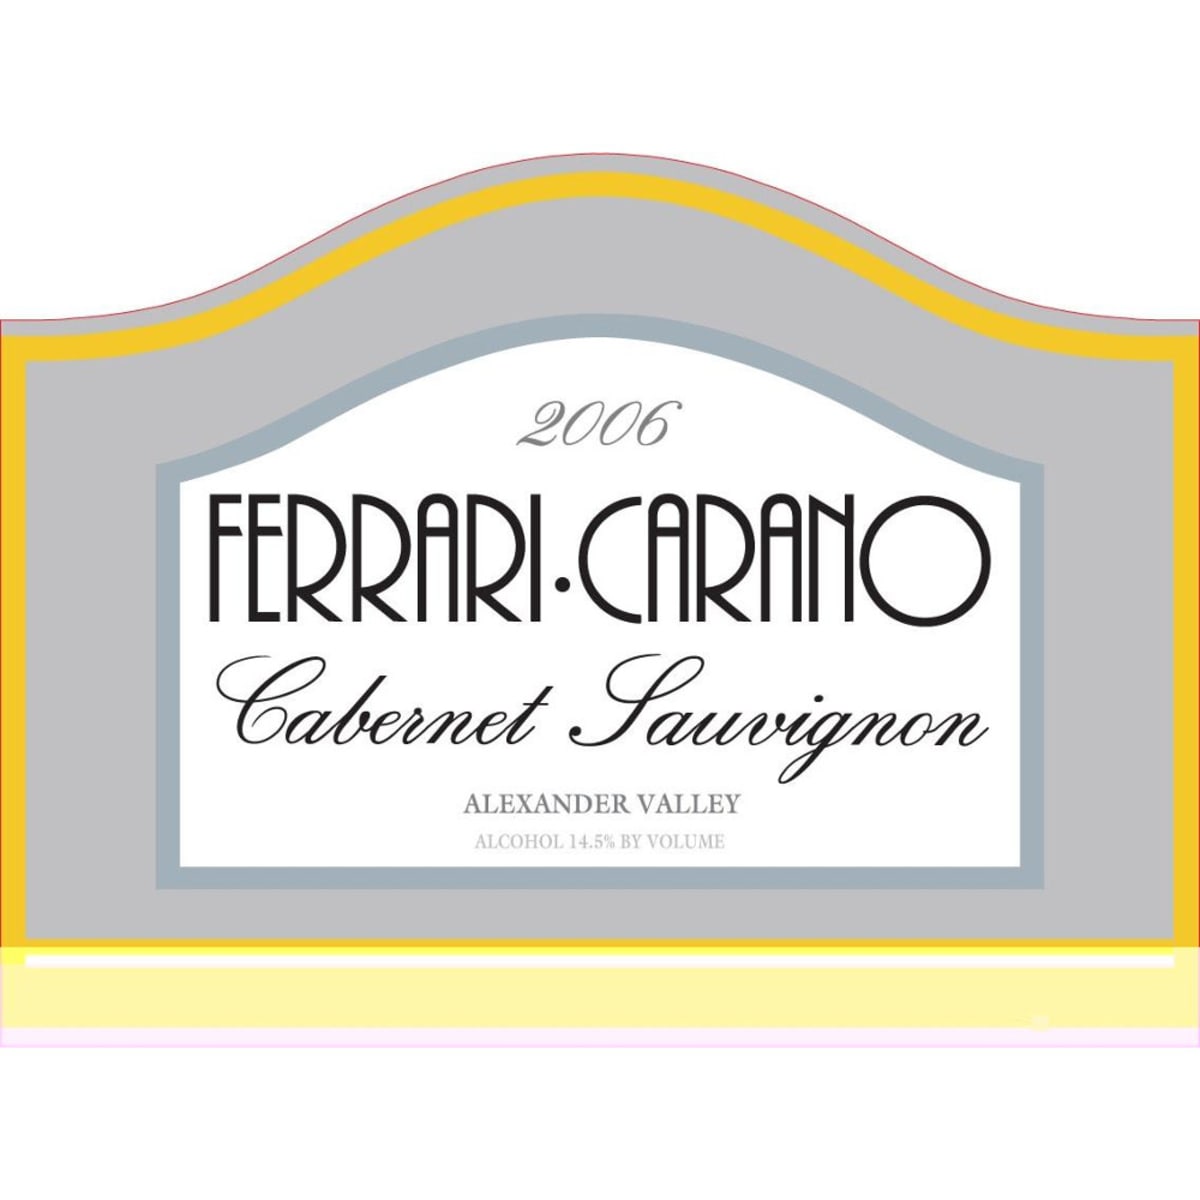 Ferrari-Carano Cabernet Sauvignon 2006 Front Label